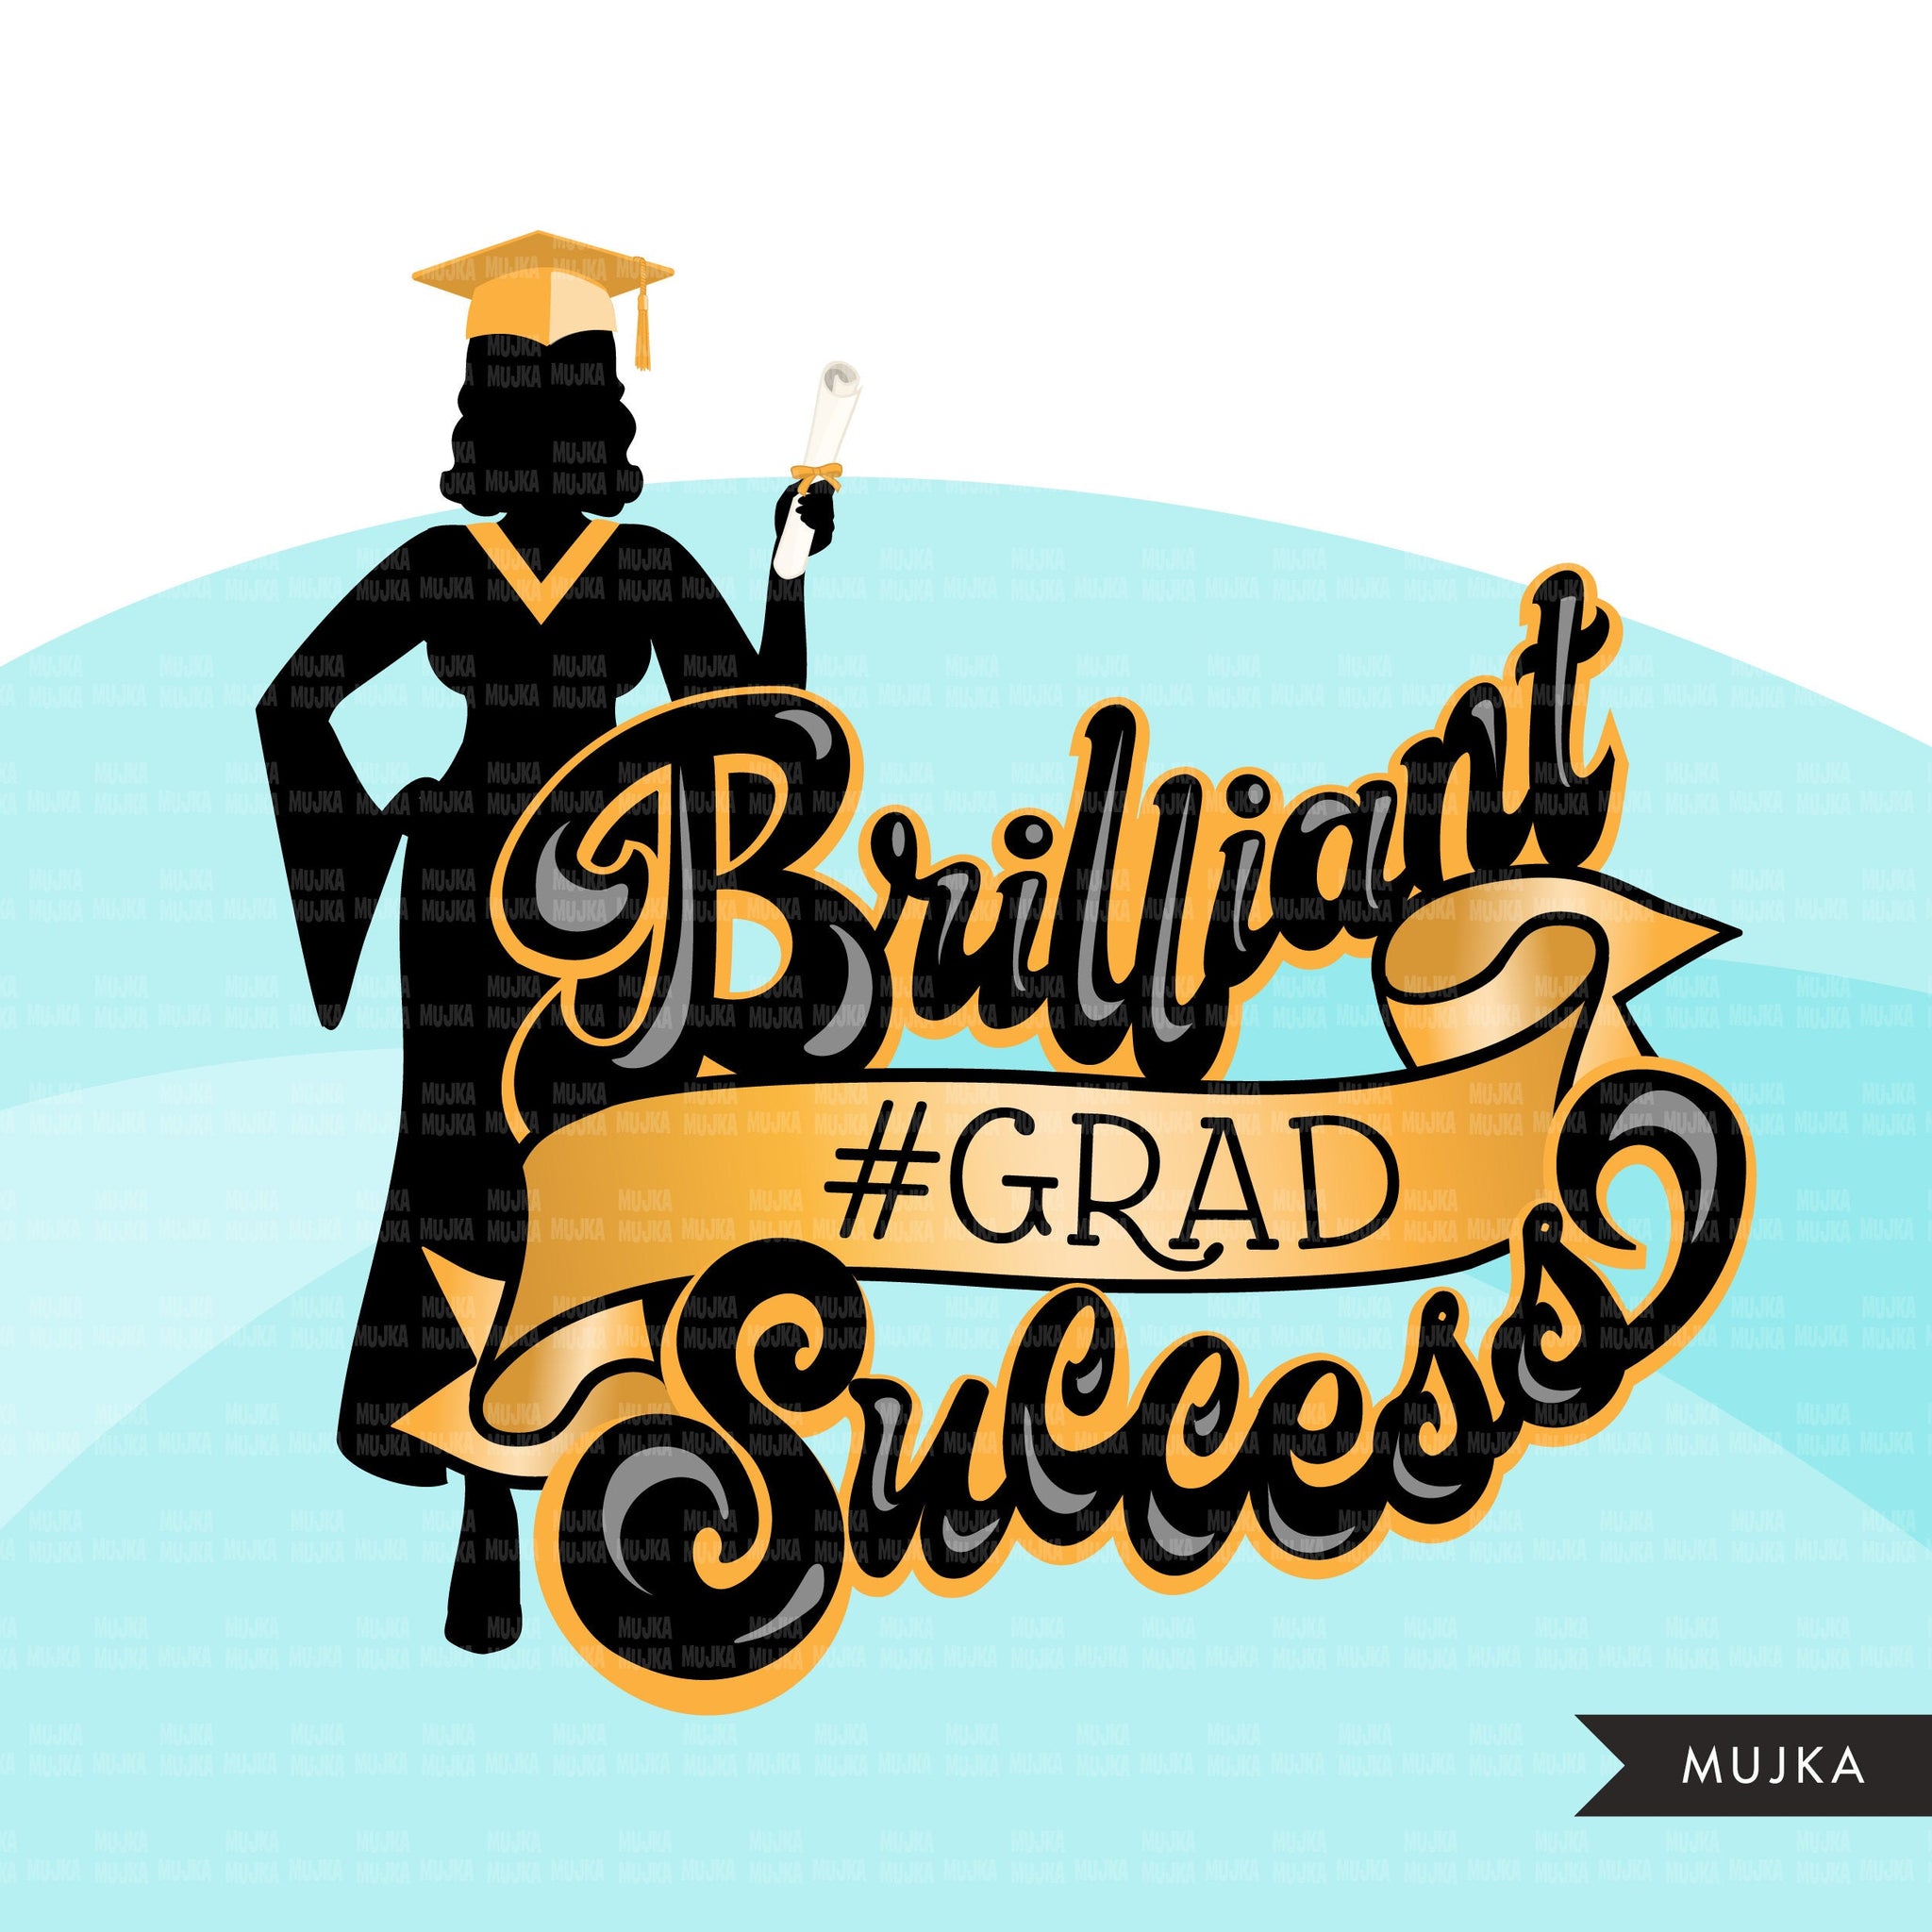 Grad Clipart, Graduation 2023 png, Brilliant grad sublimation designs digital download, class of 2023 png, graduate women school clip art graphics